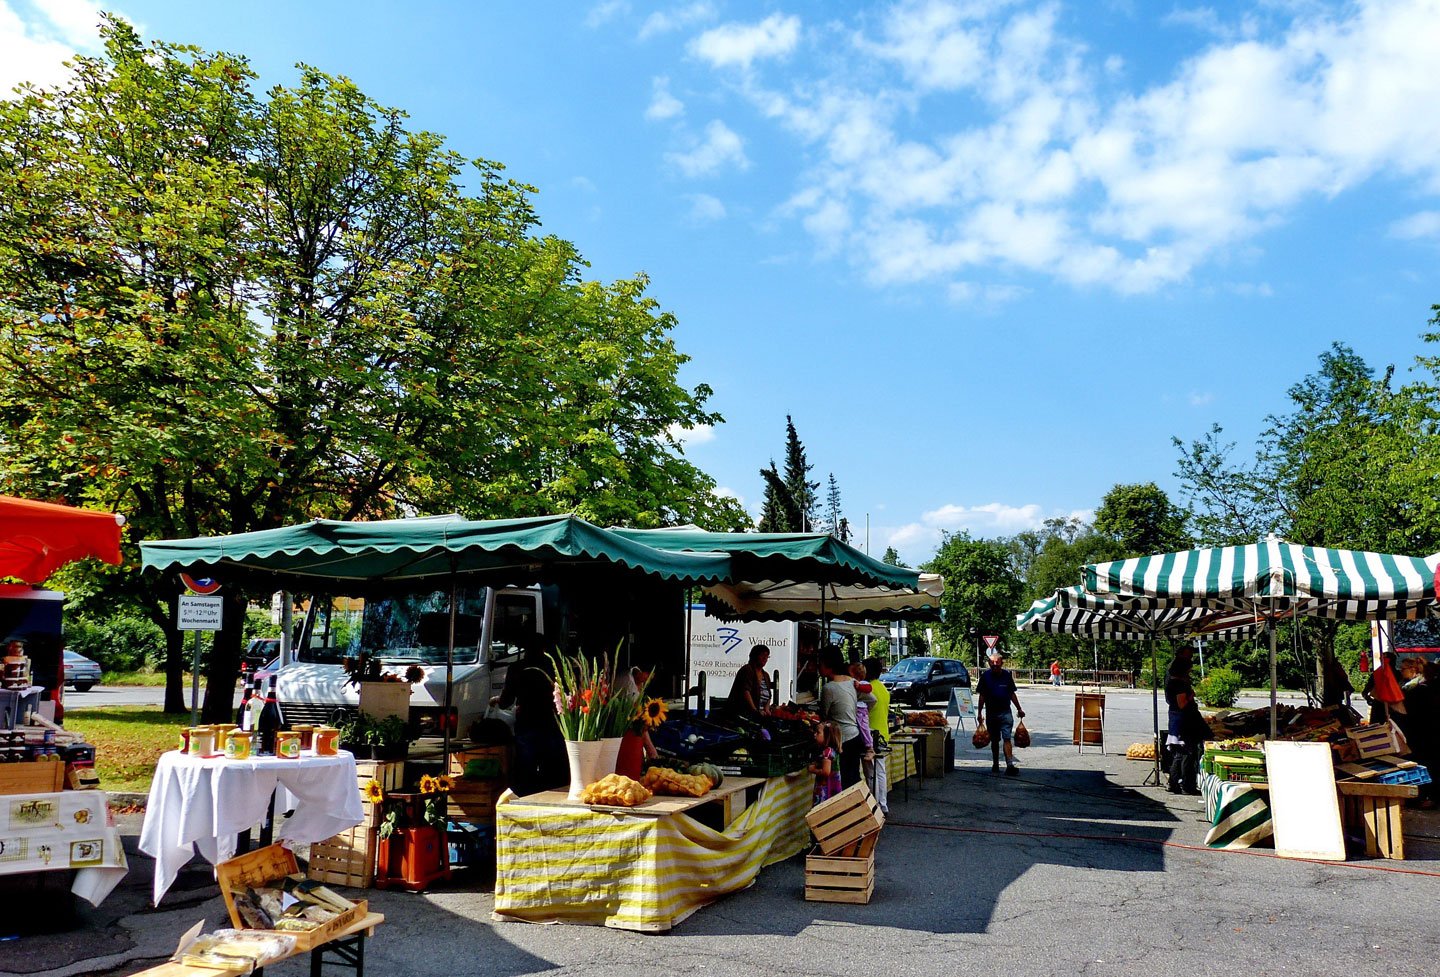 Jeden Samstag findet in Zwiesel ein Bauernmarkt statt.